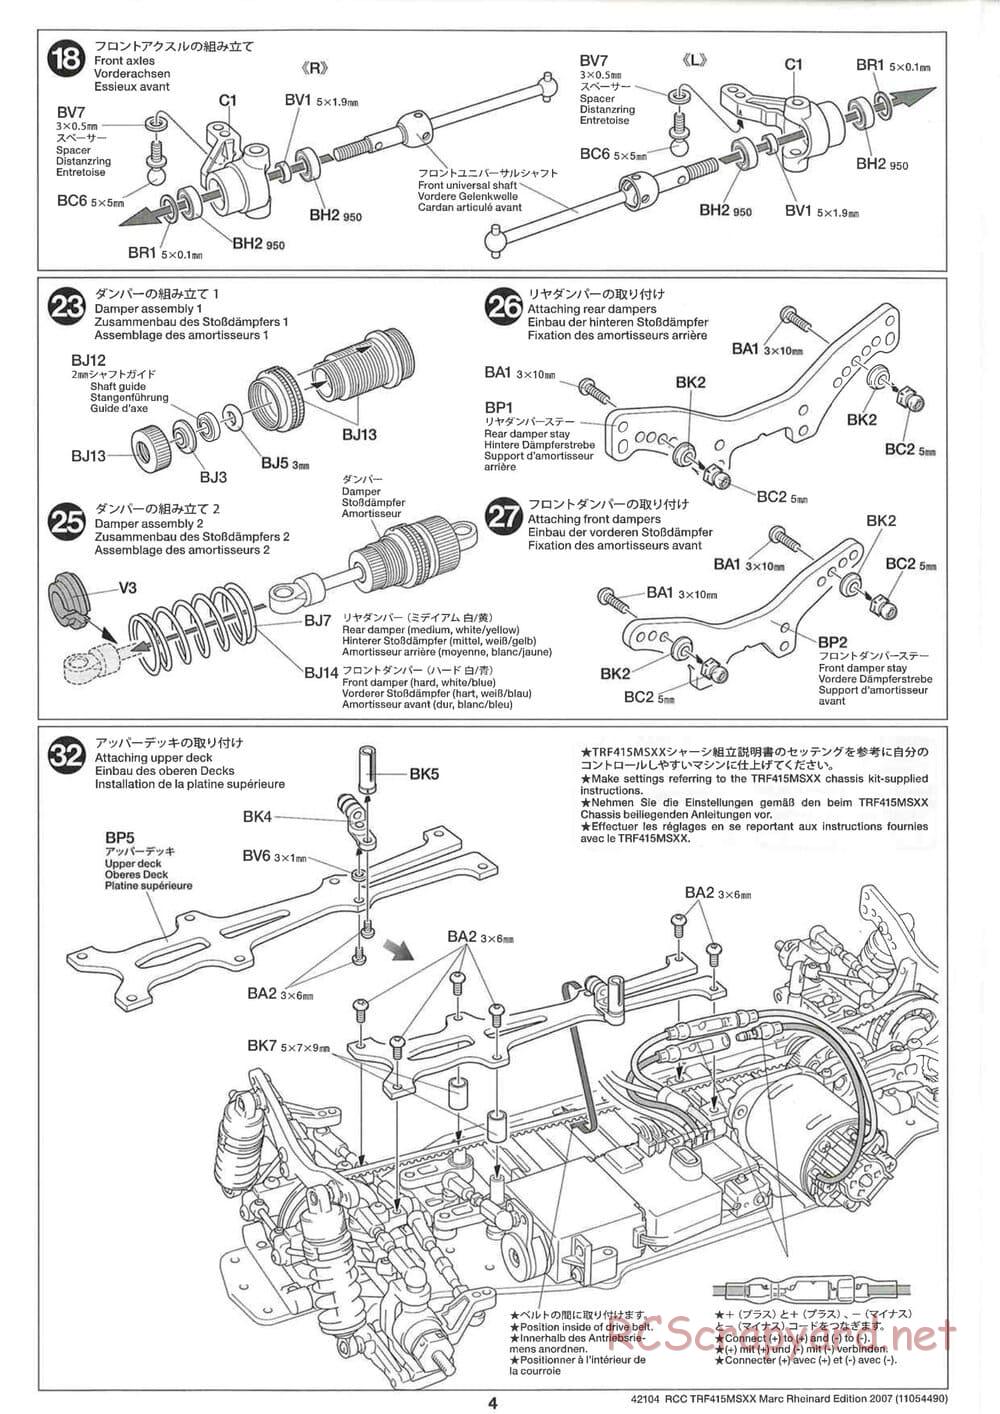 Tamiya - TRF415 MSXX - Marc Rheinard Edition 2007 Chassis - Manual - Page 4